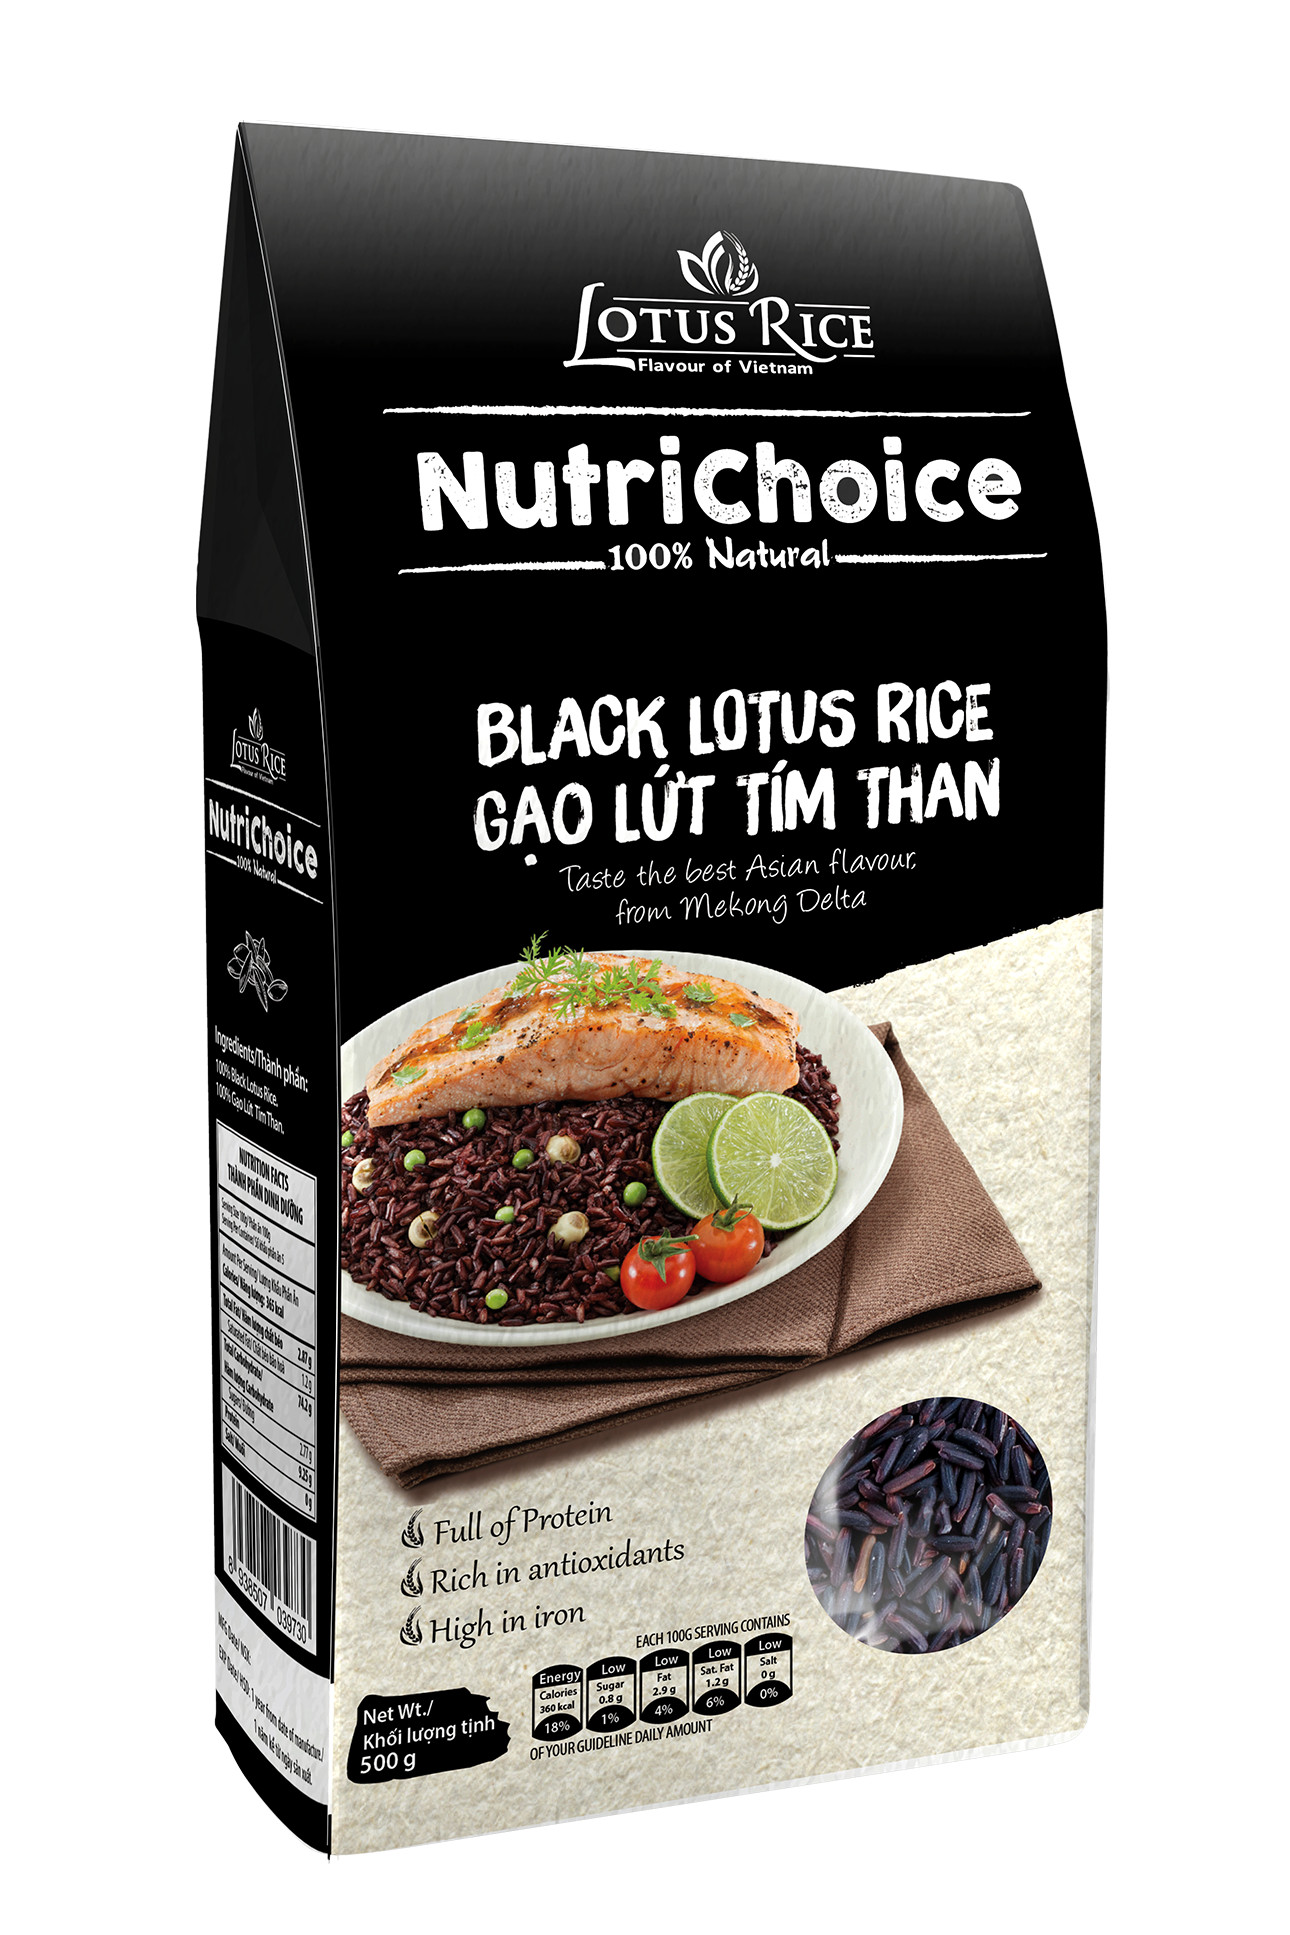 Combo 3 Gạo Lứt Tím Than Hữu Cơ NutriChoice Black Lotus Rice Gói 500g Thơm Ngon Giàu Dinh Dưỡng ORIMART